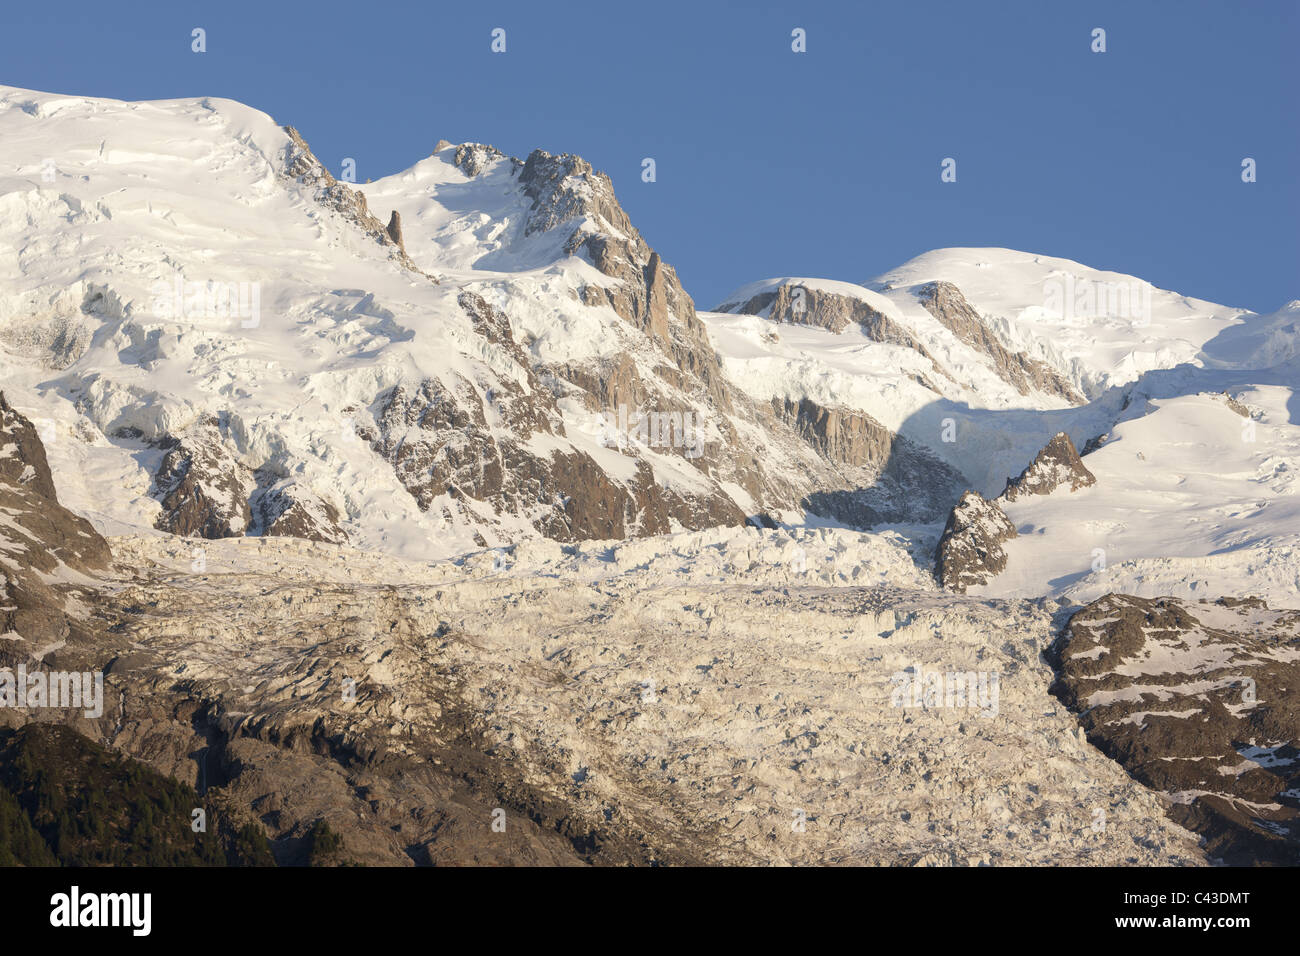 Nordseite des Mont Blanc mit dem Glacier des Bossons (einer der steilsten Gletscher der Welt). Chamonix, Haute-Savoie, Frankreich. Stockfoto